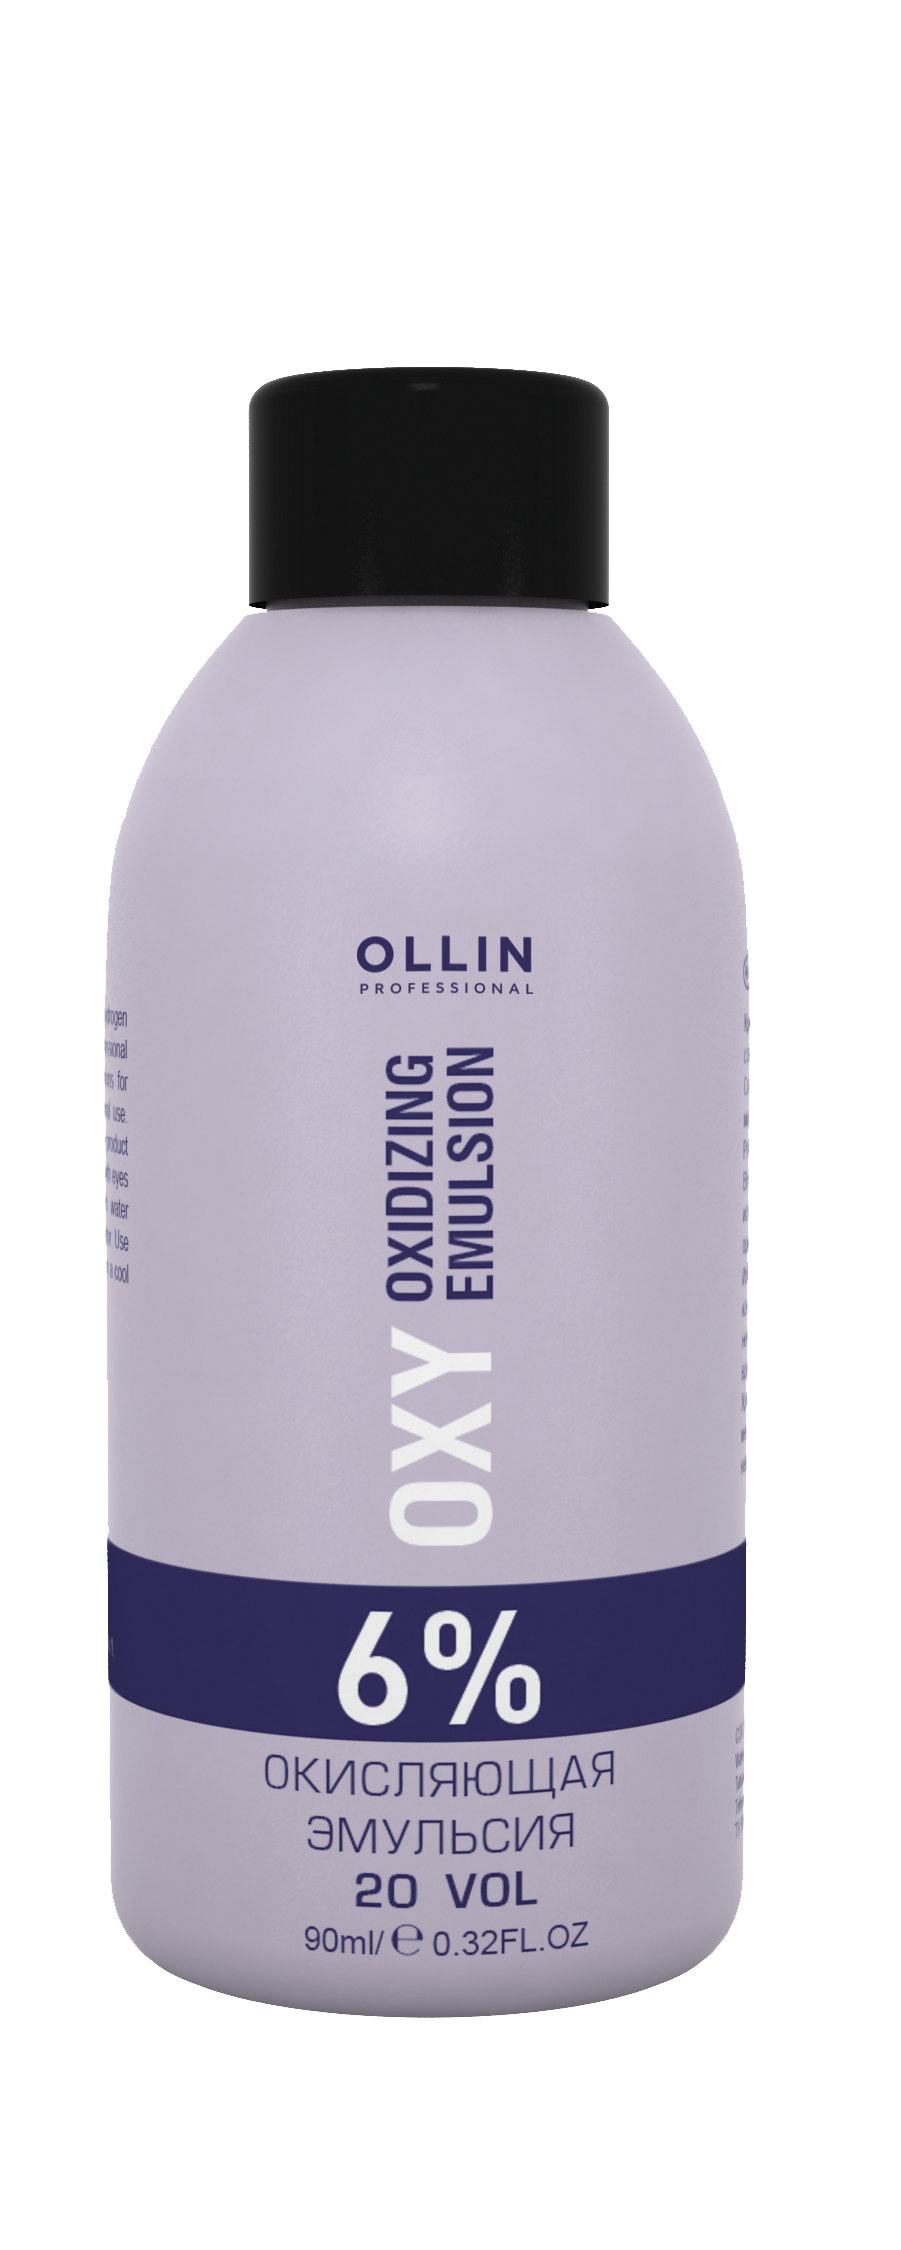 OLLIN performance OXY   6% 20vol. Окисляющая эмульсия 90мл/ Oxidizing Emulsion